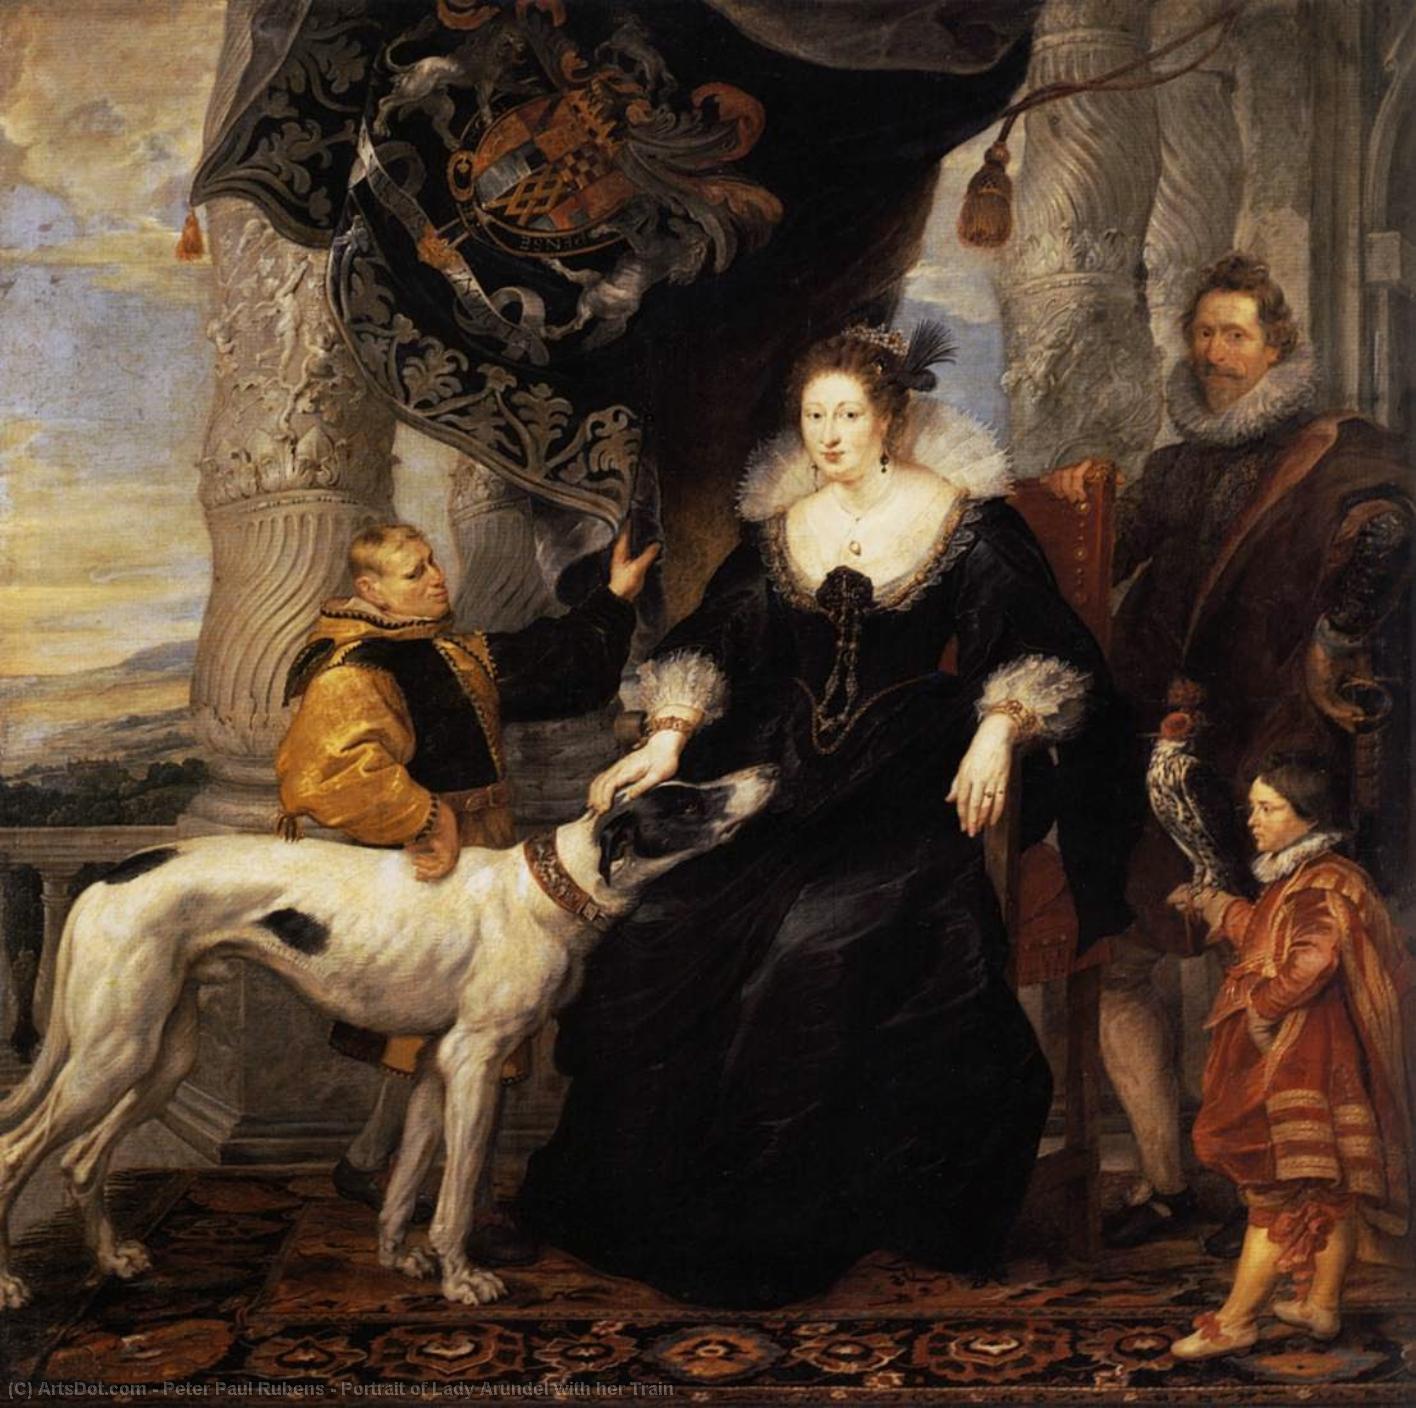 WikiOO.org - Εγκυκλοπαίδεια Καλών Τεχνών - Ζωγραφική, έργα τέχνης Peter Paul Rubens - Portrait of Lady Arundel with her Train